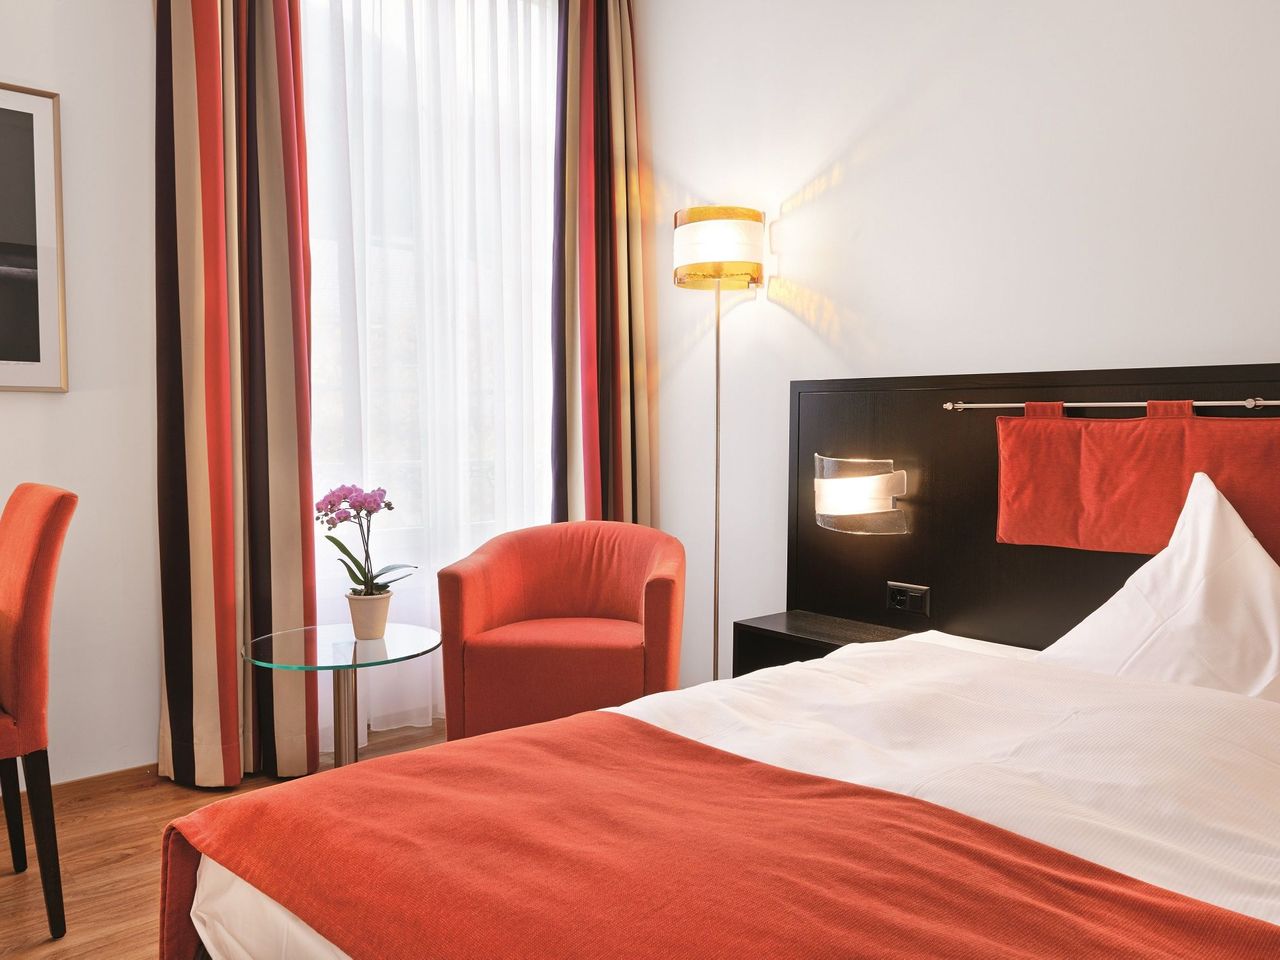 4 Tage Schweiz entdecken im Sorell Hotel Tamina